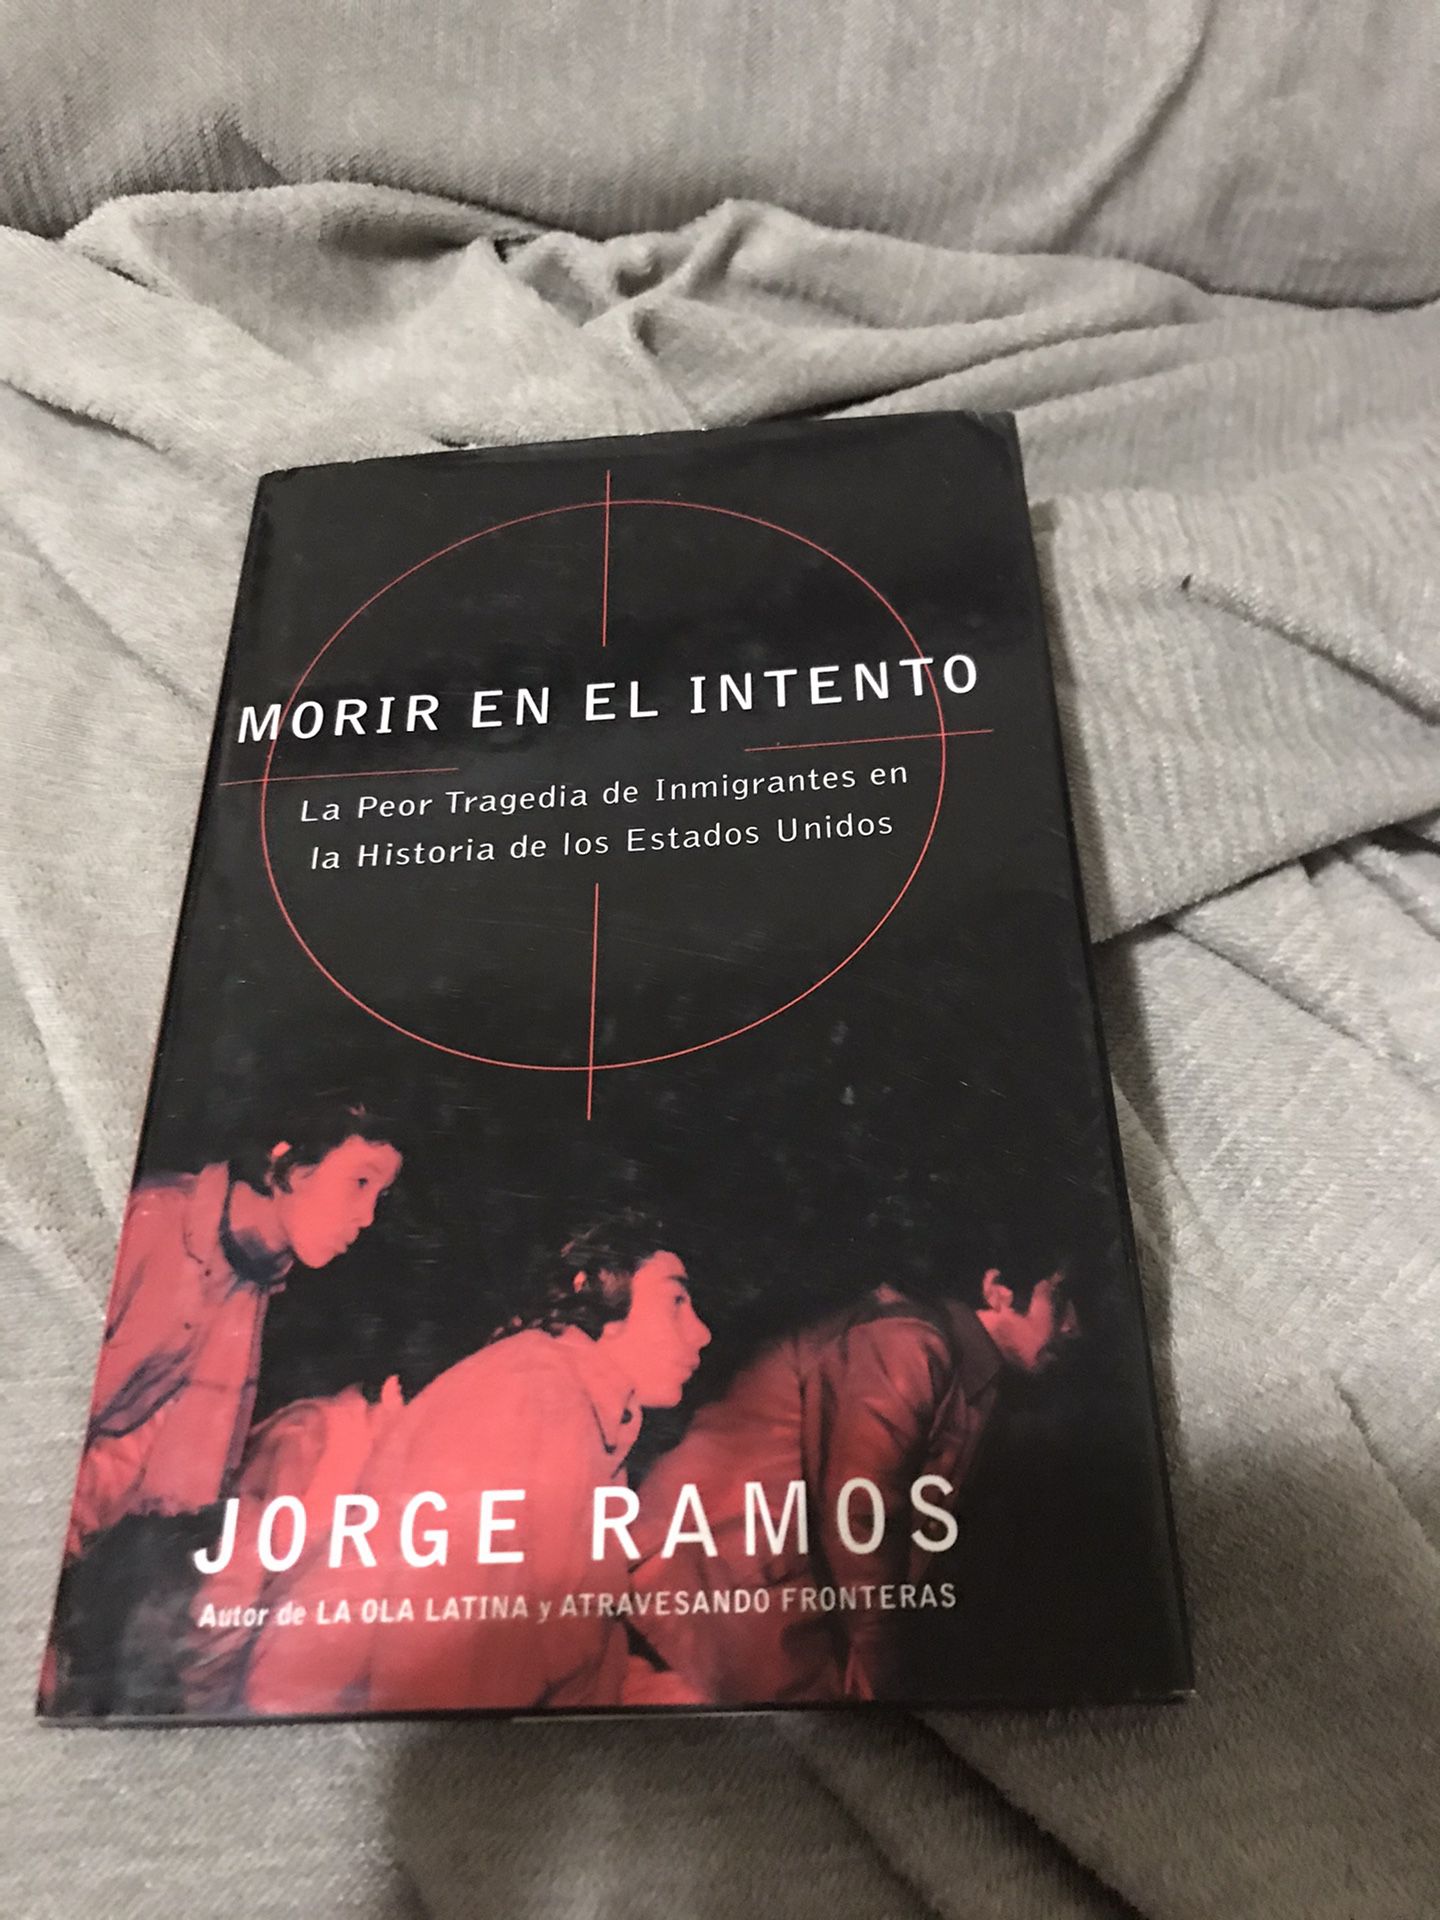 Book Spanish